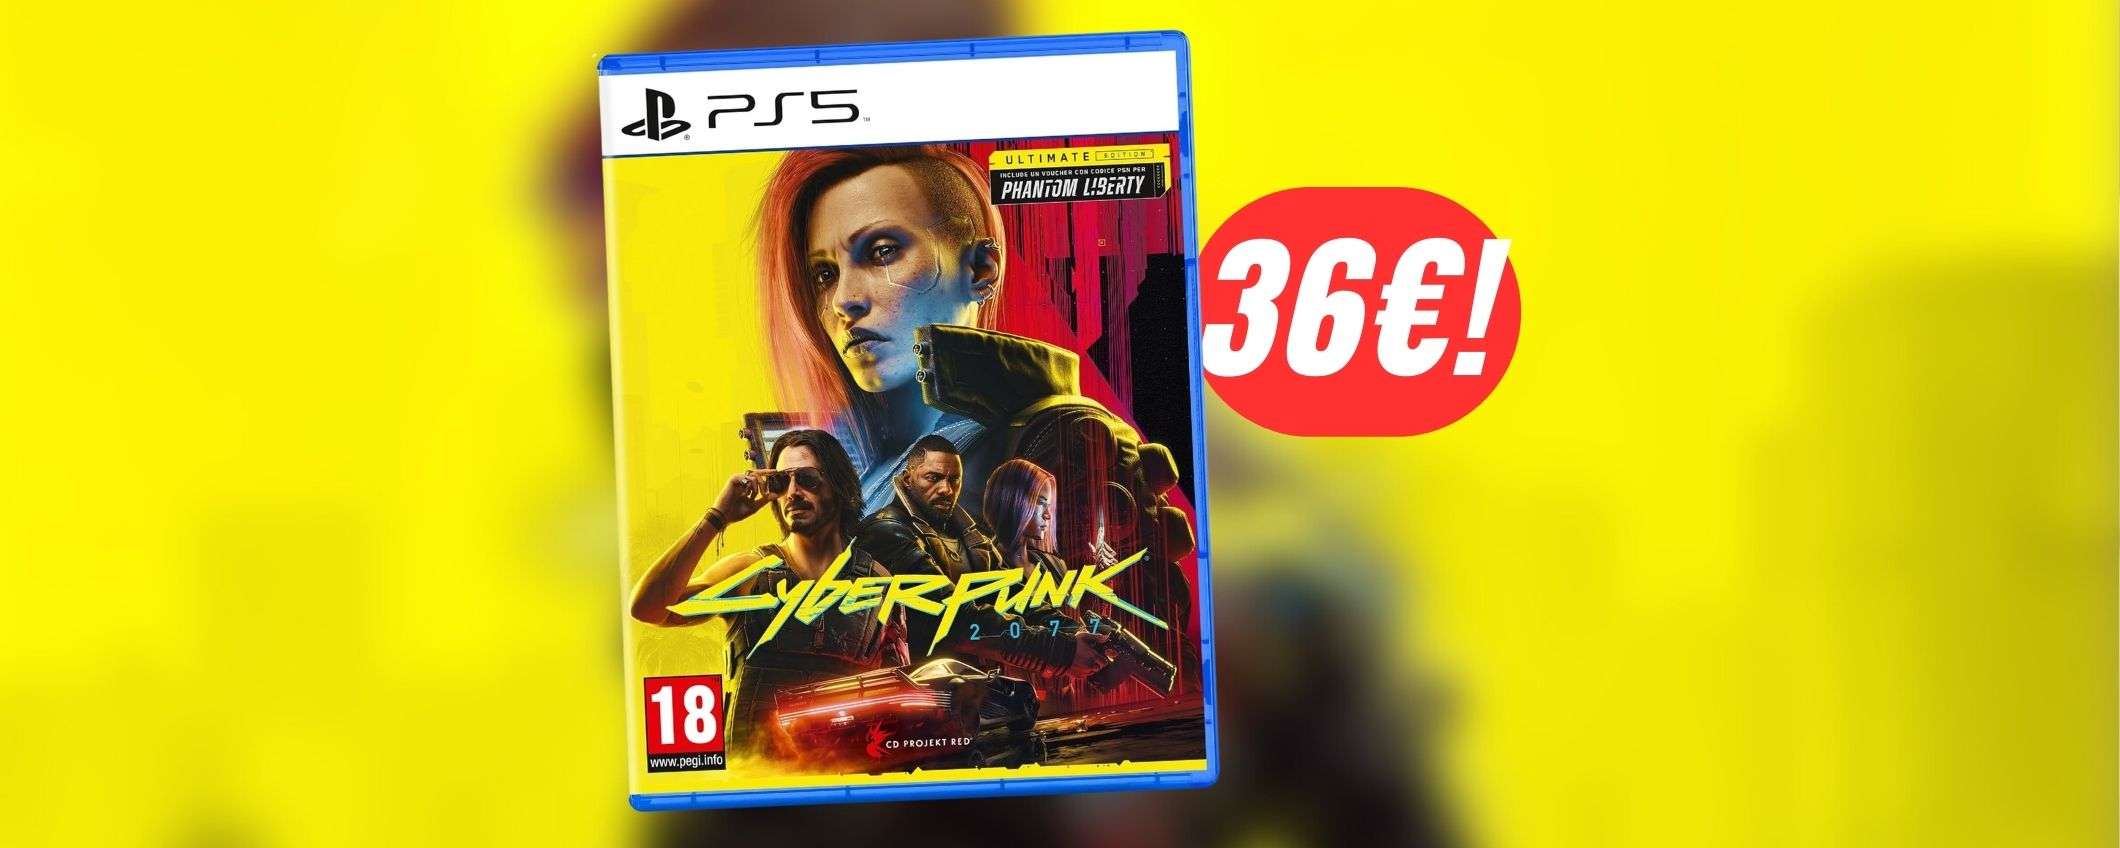 Cyberpunk 2077 è un gioco incredibile ora (e la Ultimate Edition costa appena 36€!)